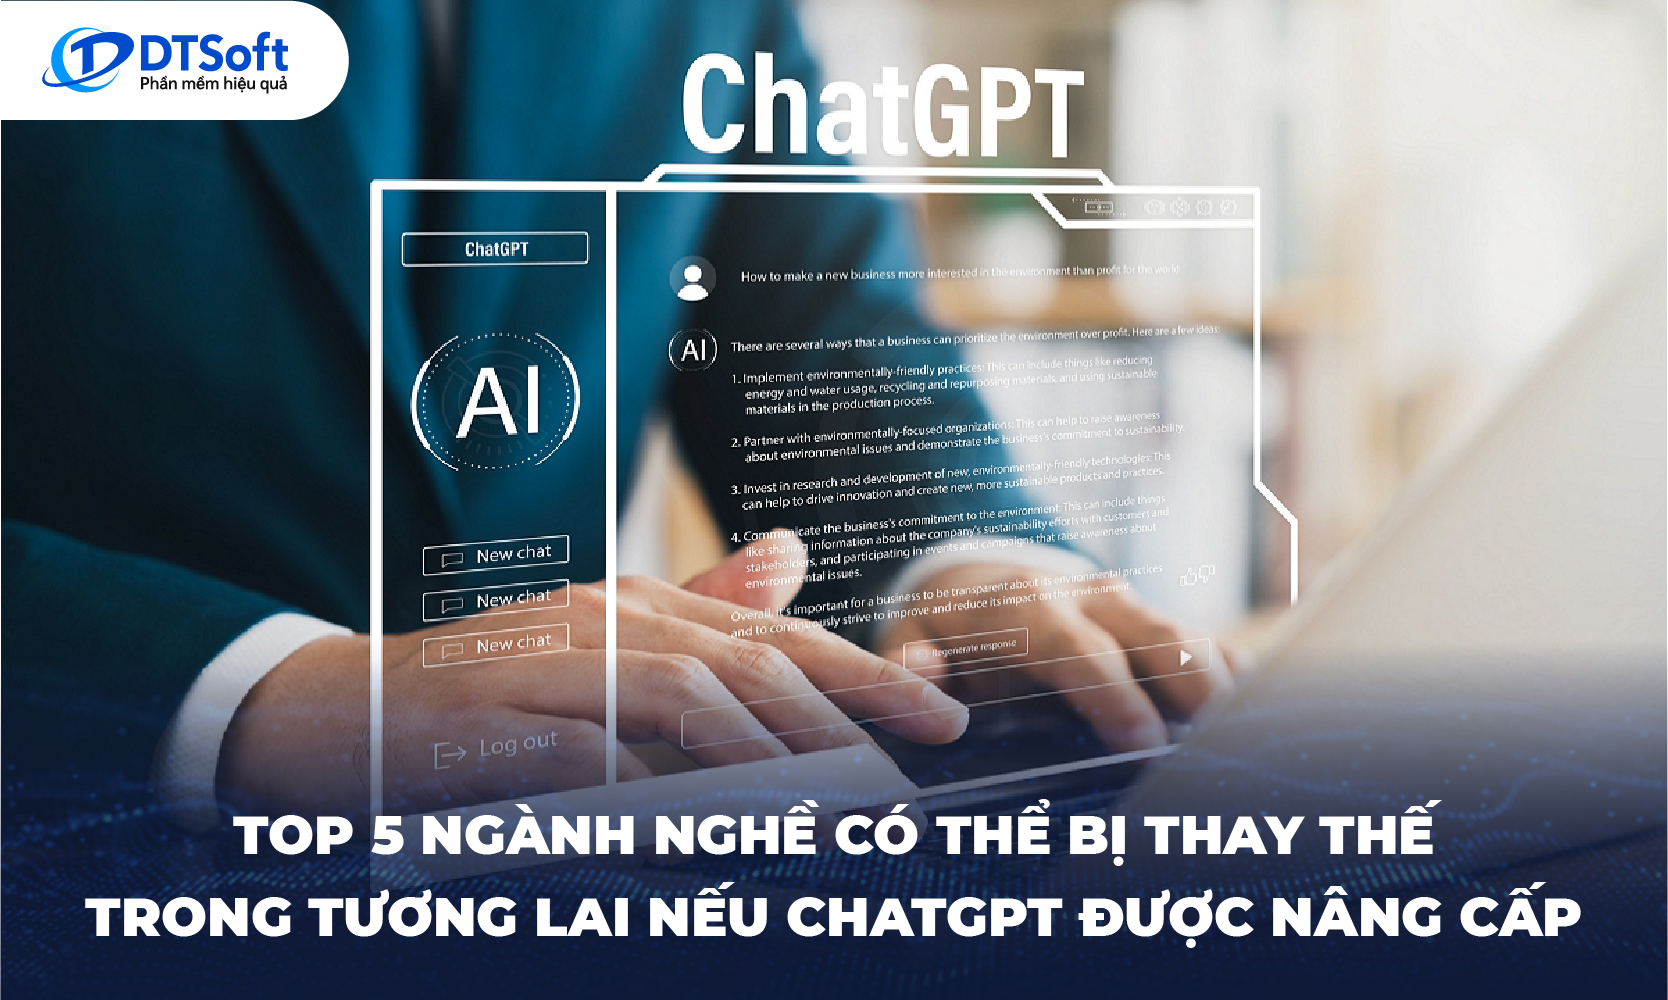 Top 5 ngành nghề có thể bị thay thế trong tương lai nếu ChatGPT được nâng cấp